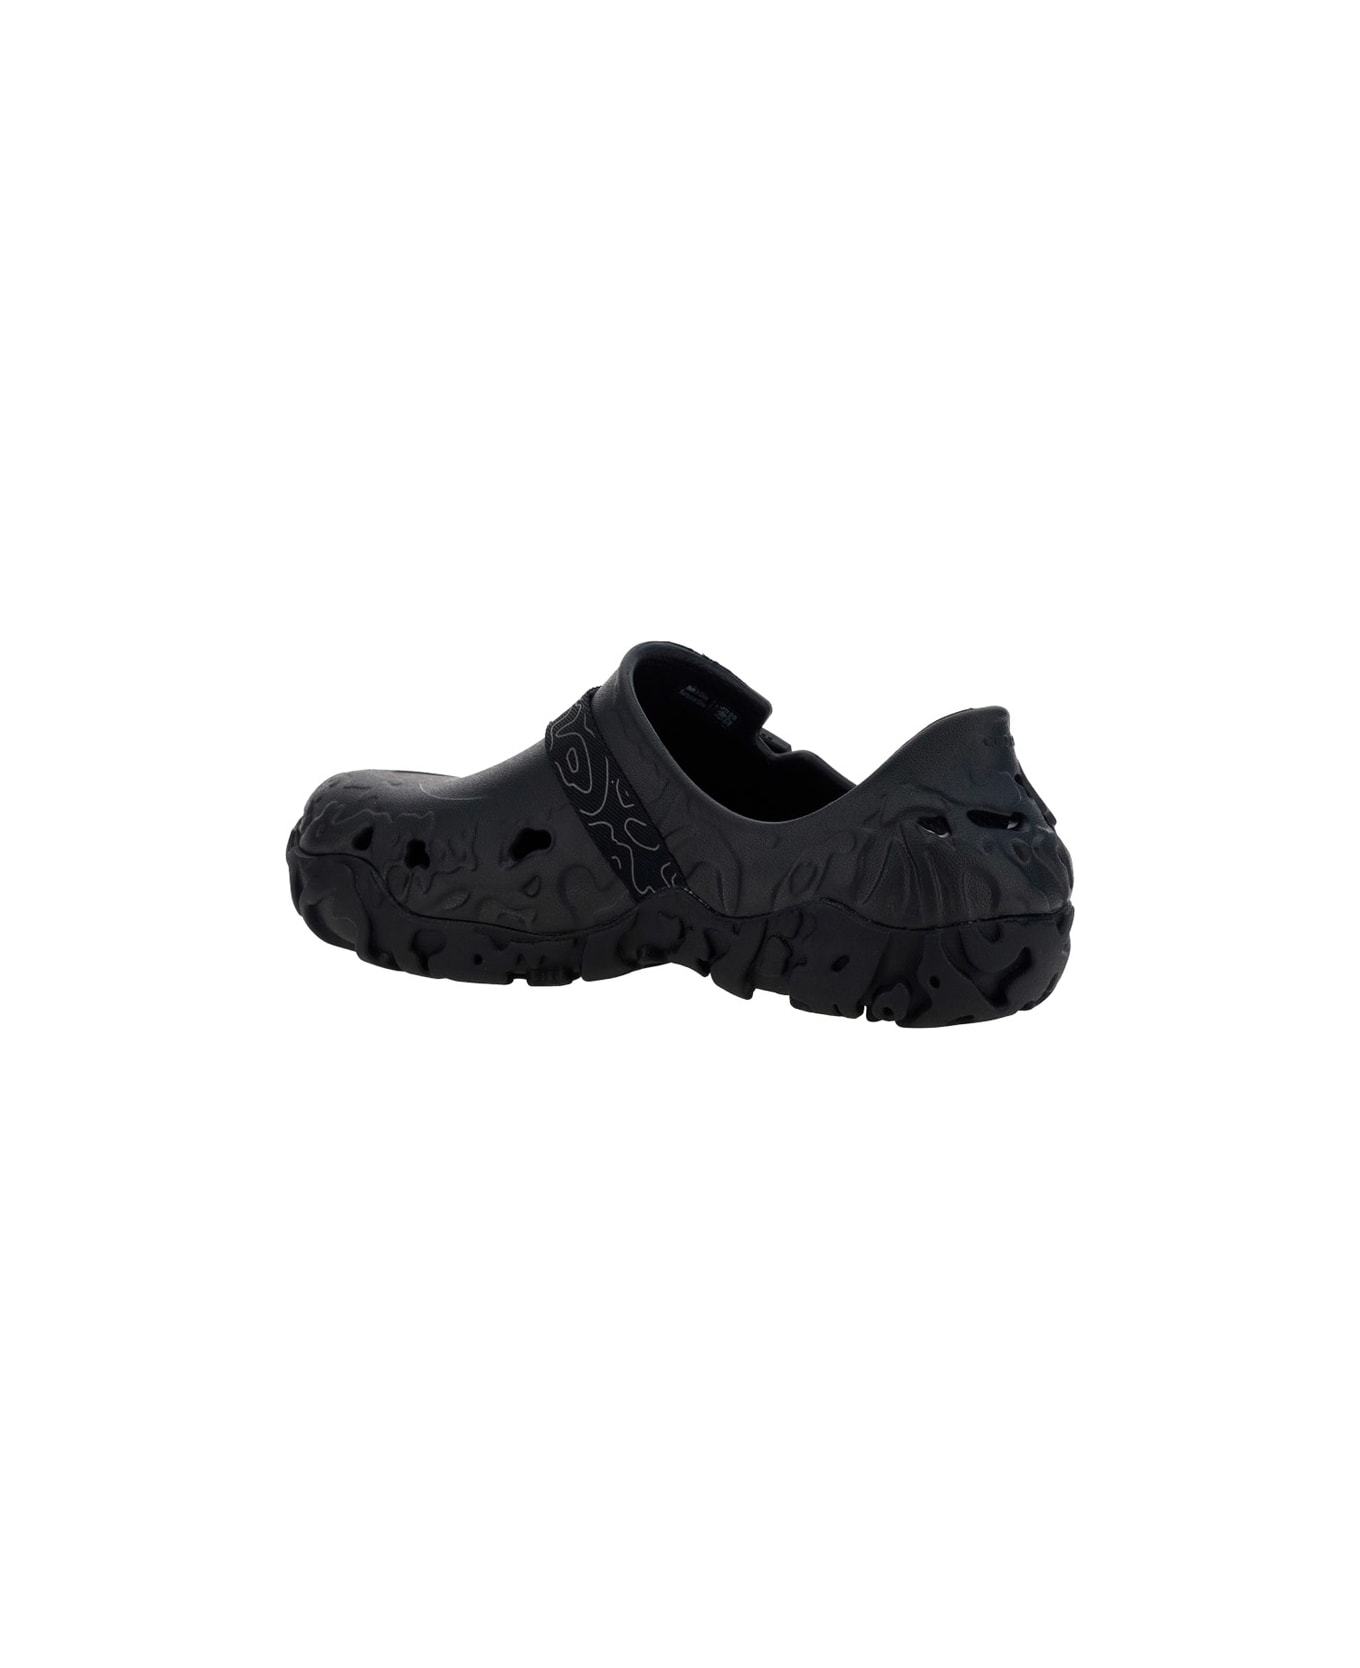 Crocs All Terrain Sandals - Black その他各種シューズ